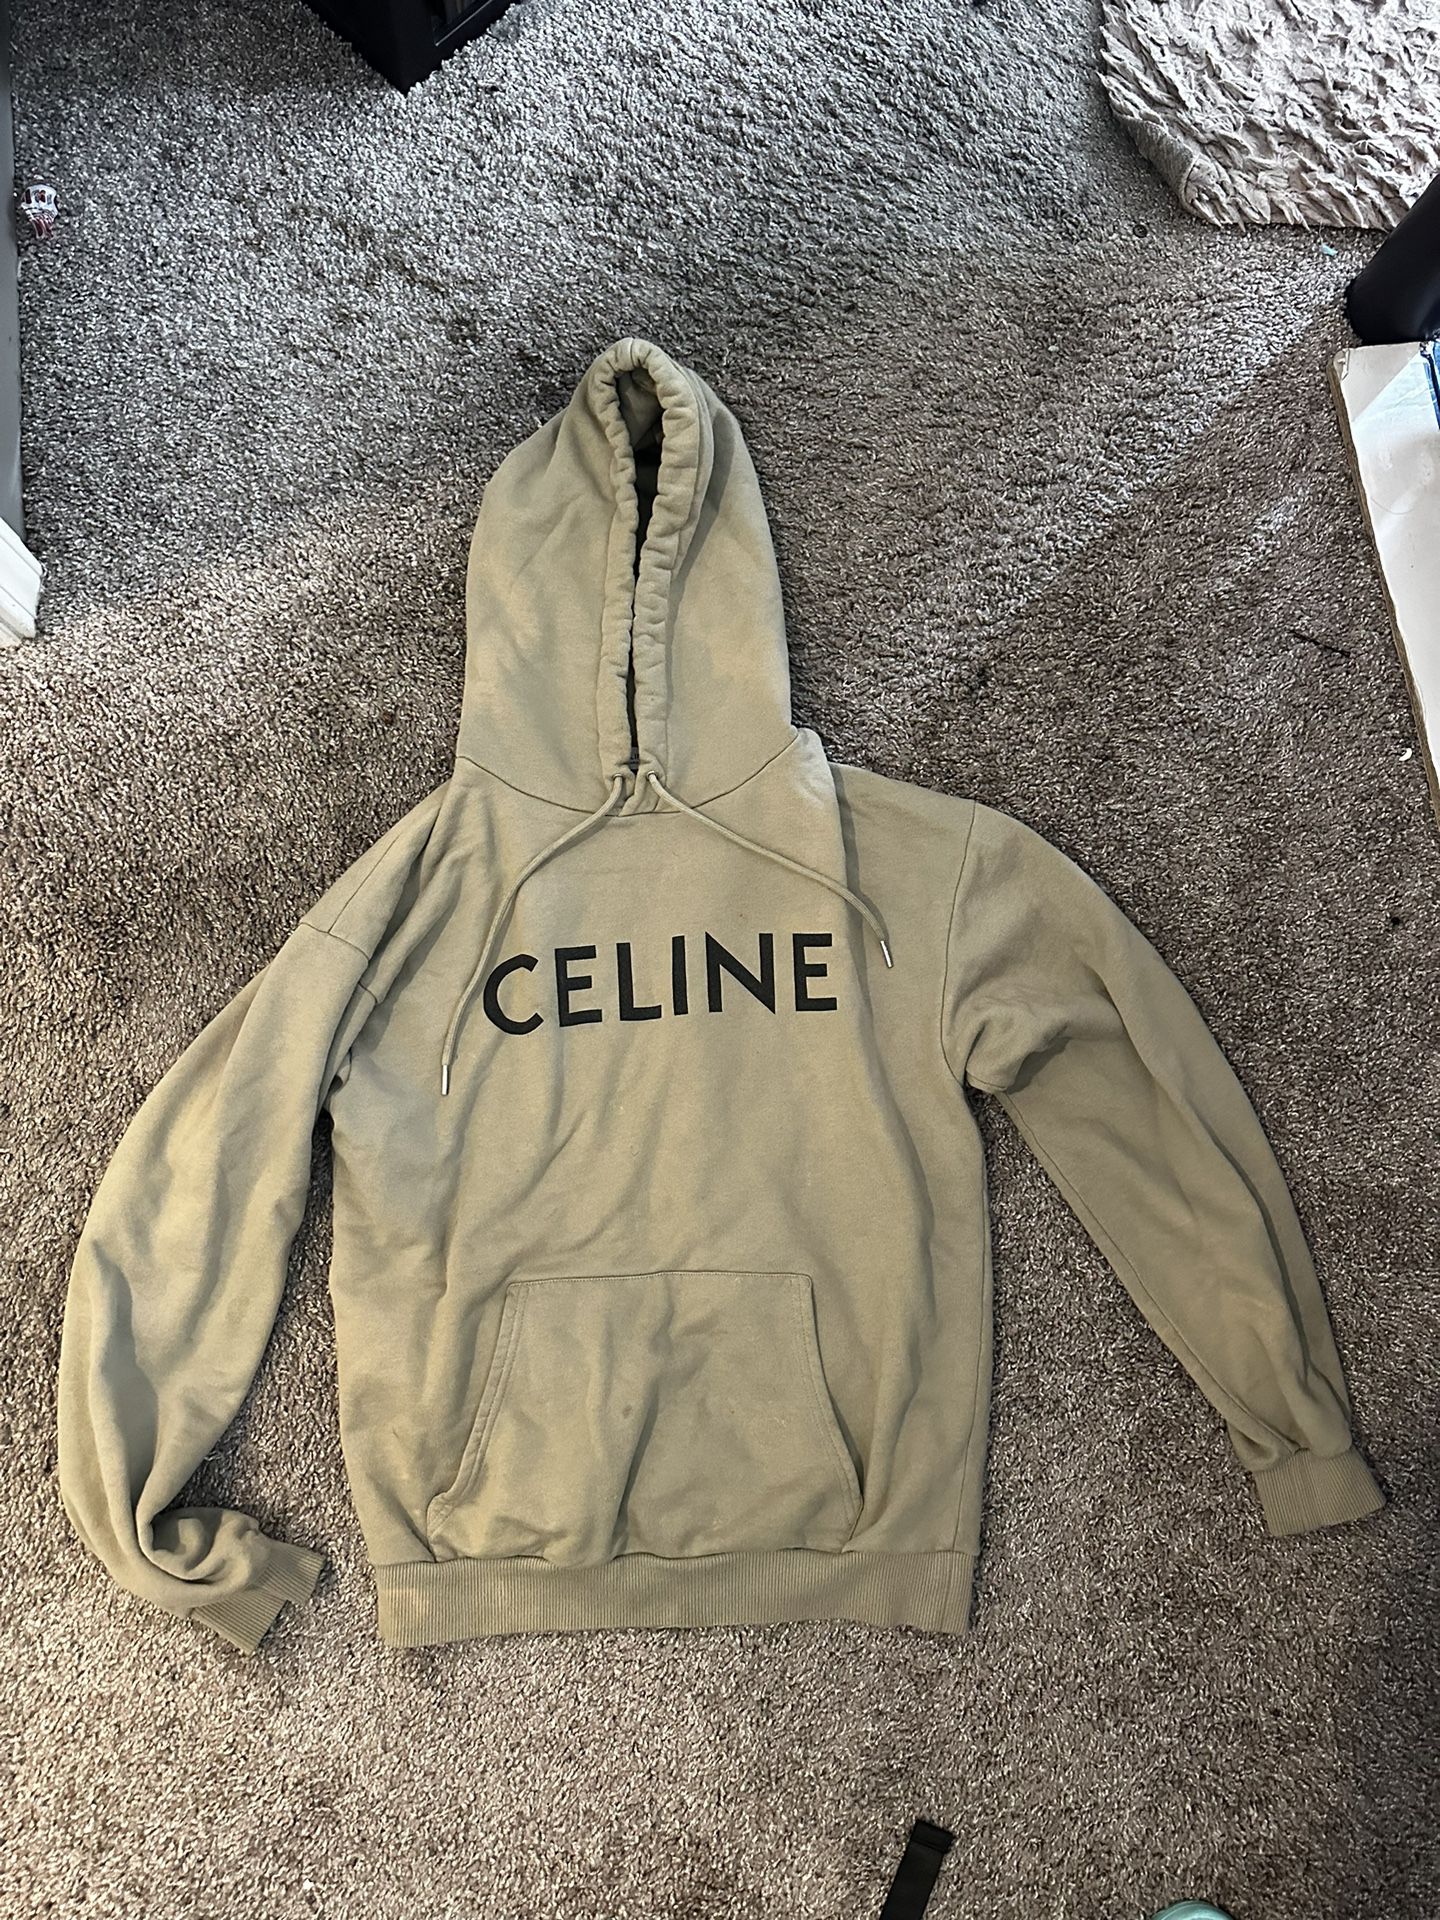 Celine hoodie